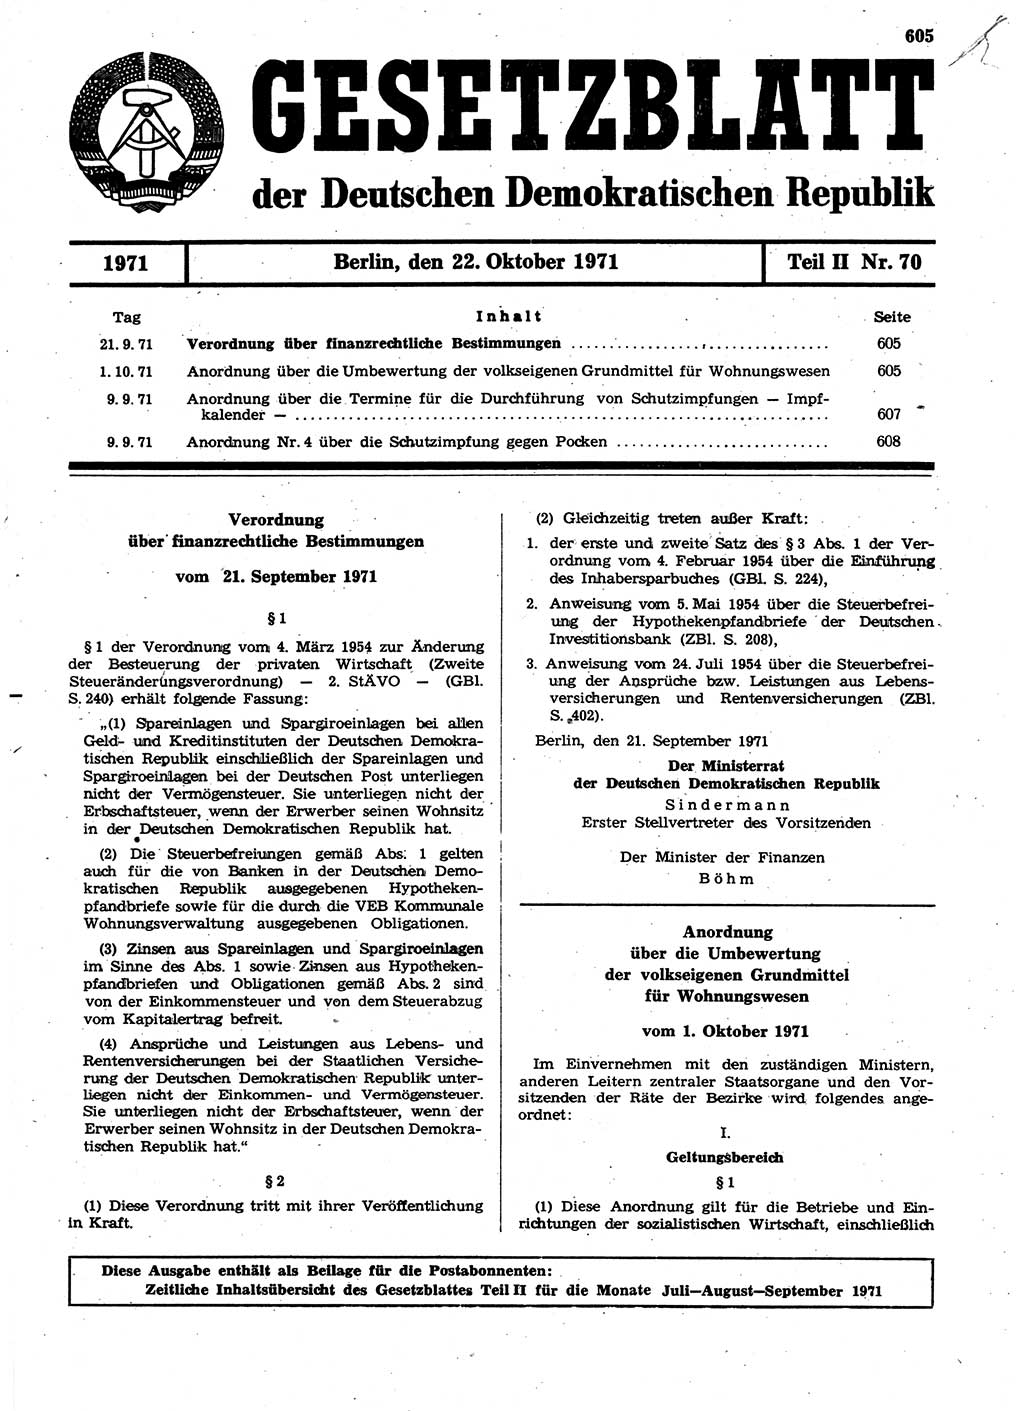 Gesetzblatt (GBl.) der Deutschen Demokratischen Republik (DDR) Teil ⅠⅠ 1971, Seite 605 (GBl. DDR ⅠⅠ 1971, S. 605)